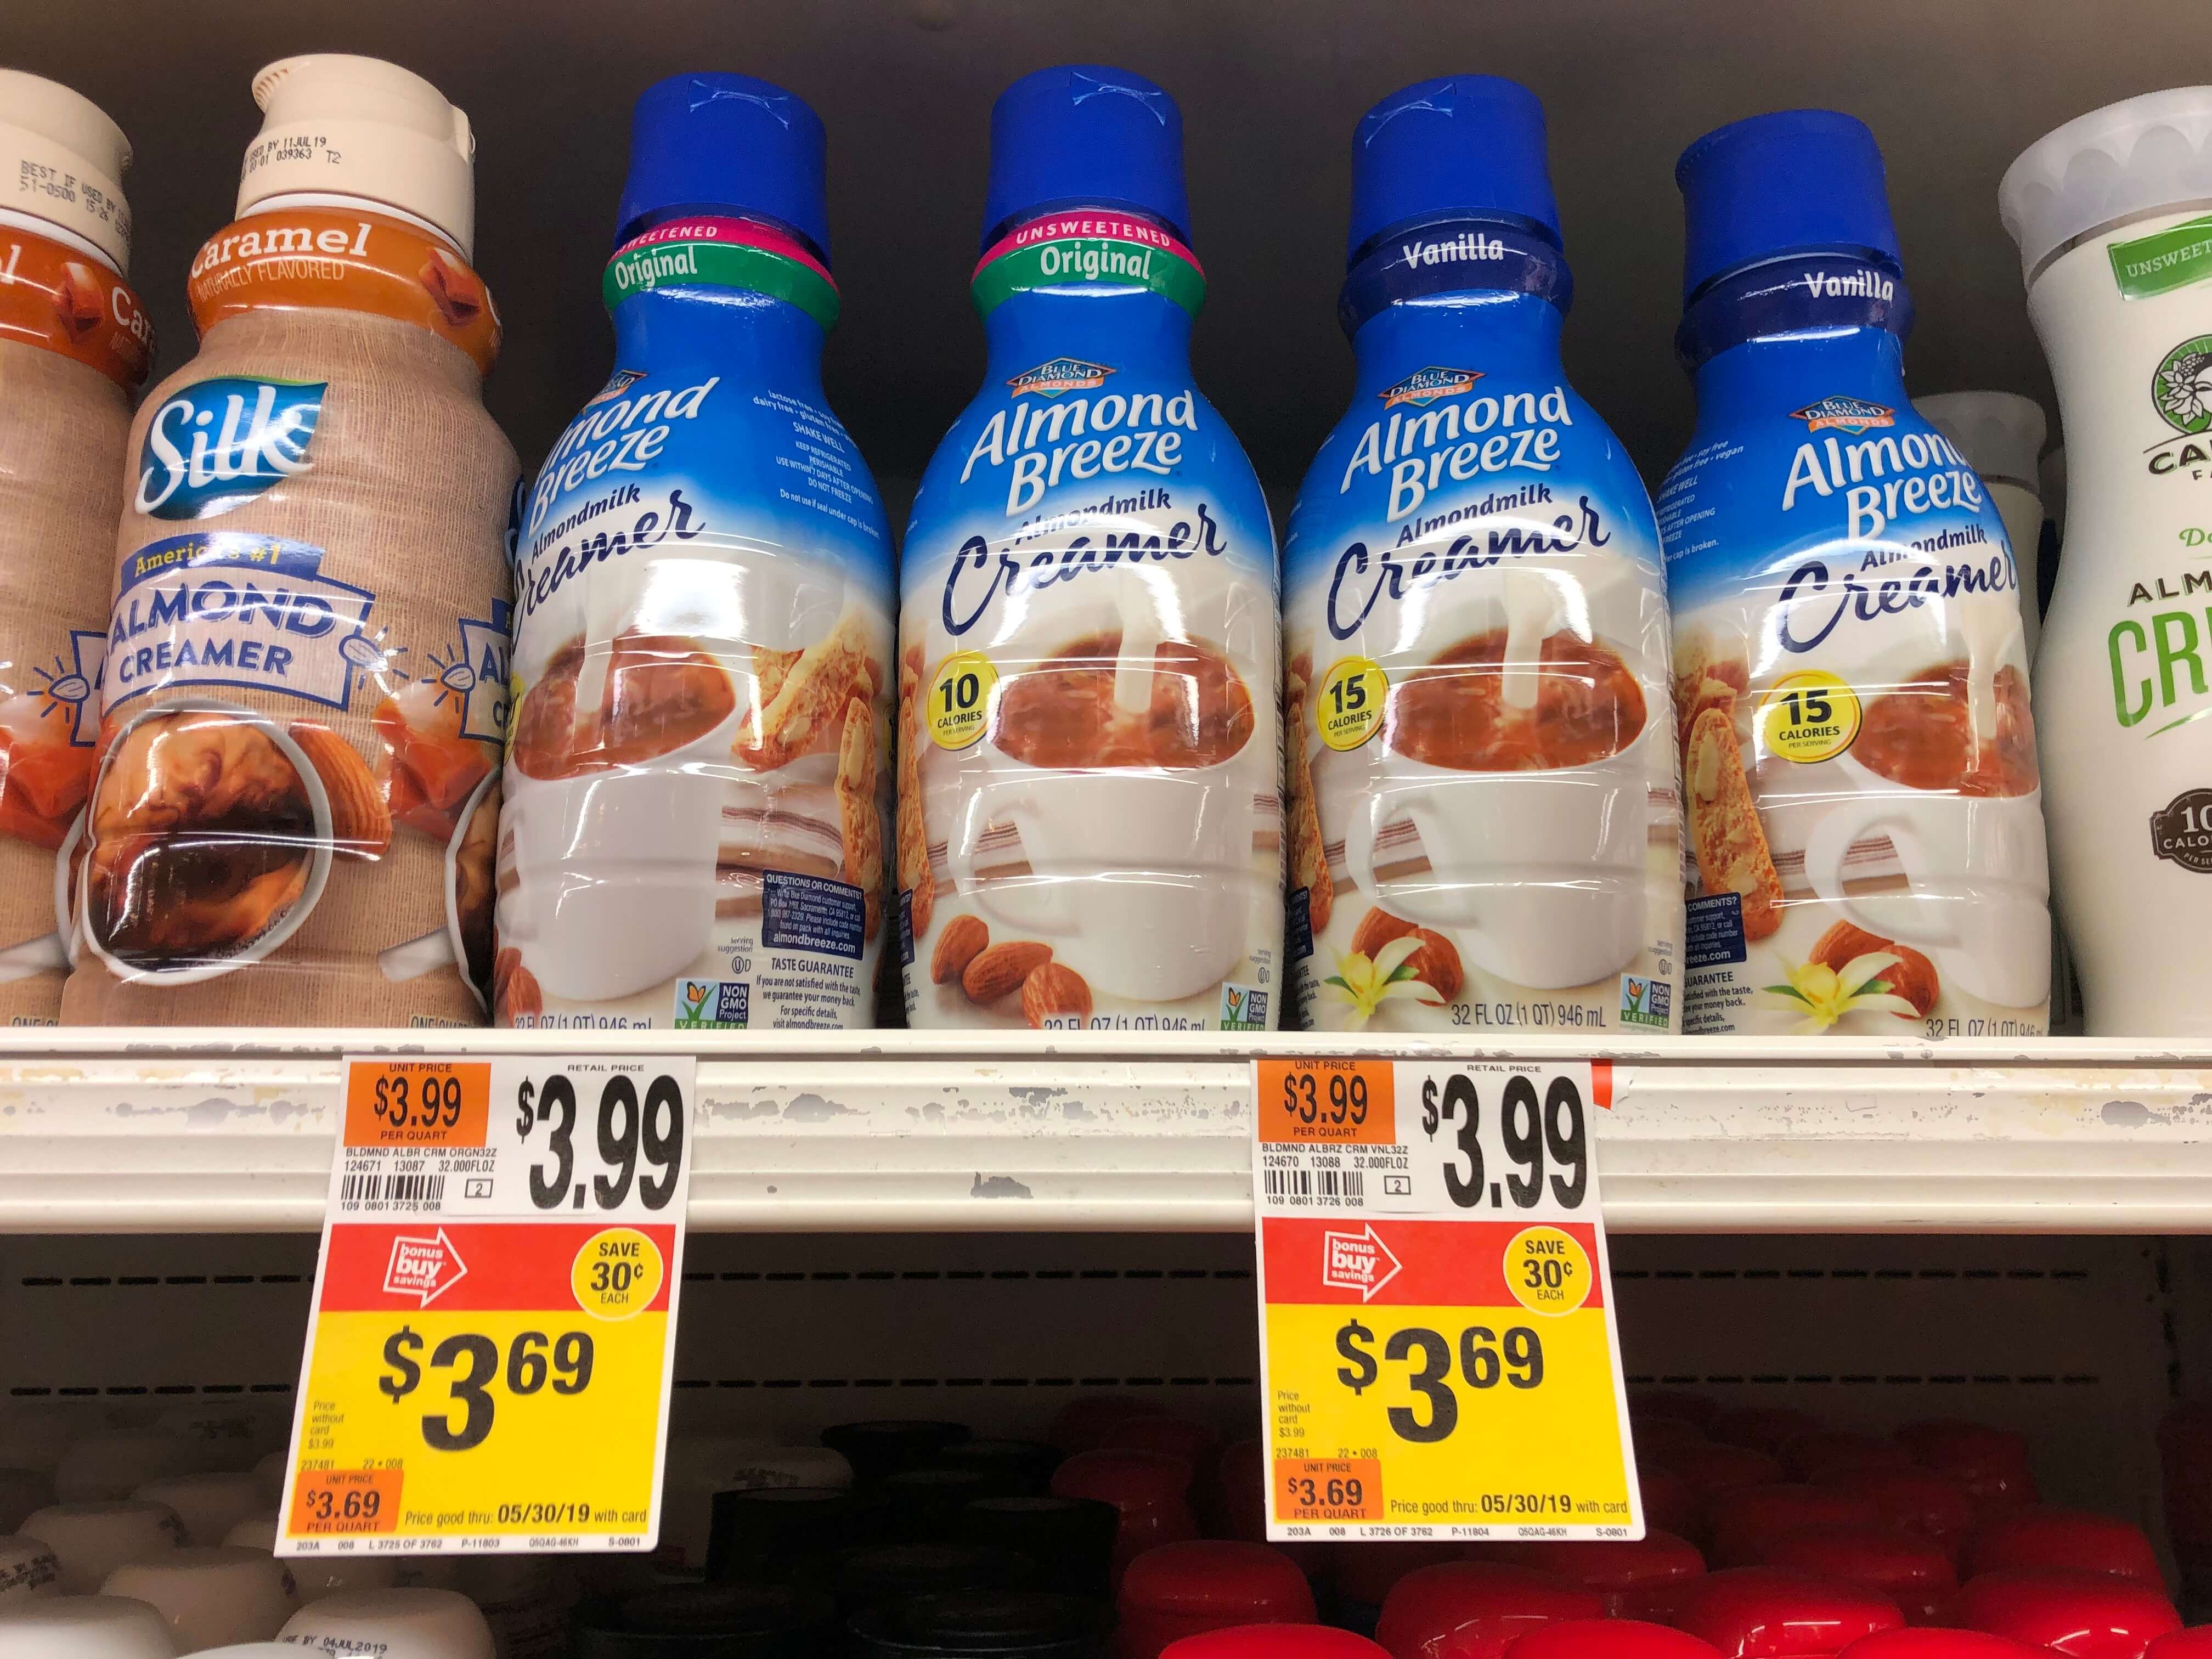 almond-breeze-almondmilk-creamers-only-1-69-at-stop-shop-rebate